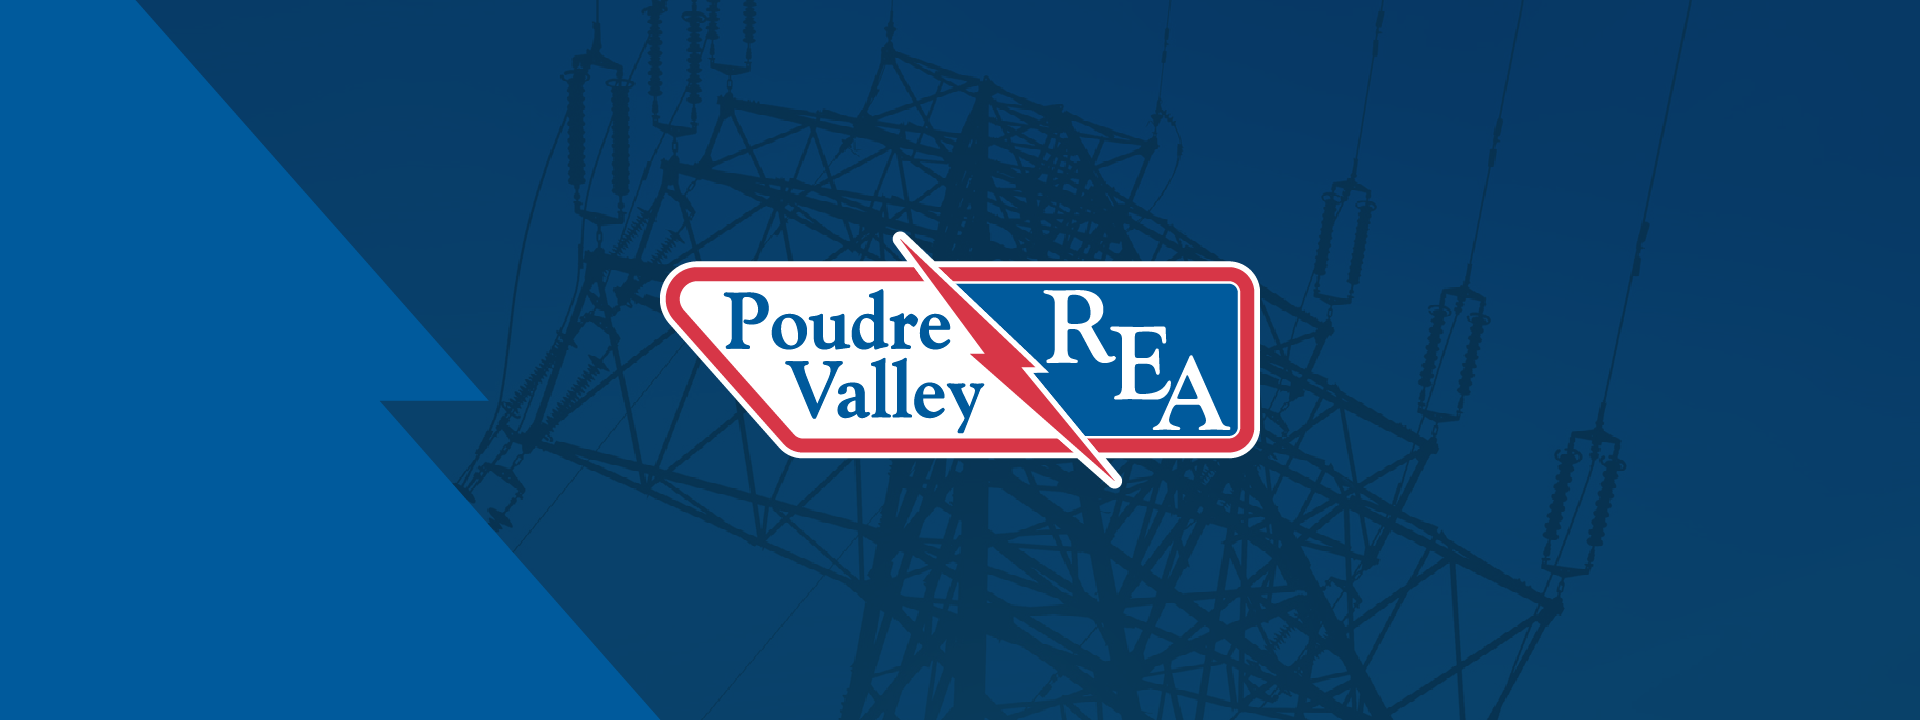 Powder Valley REA Website Redesign